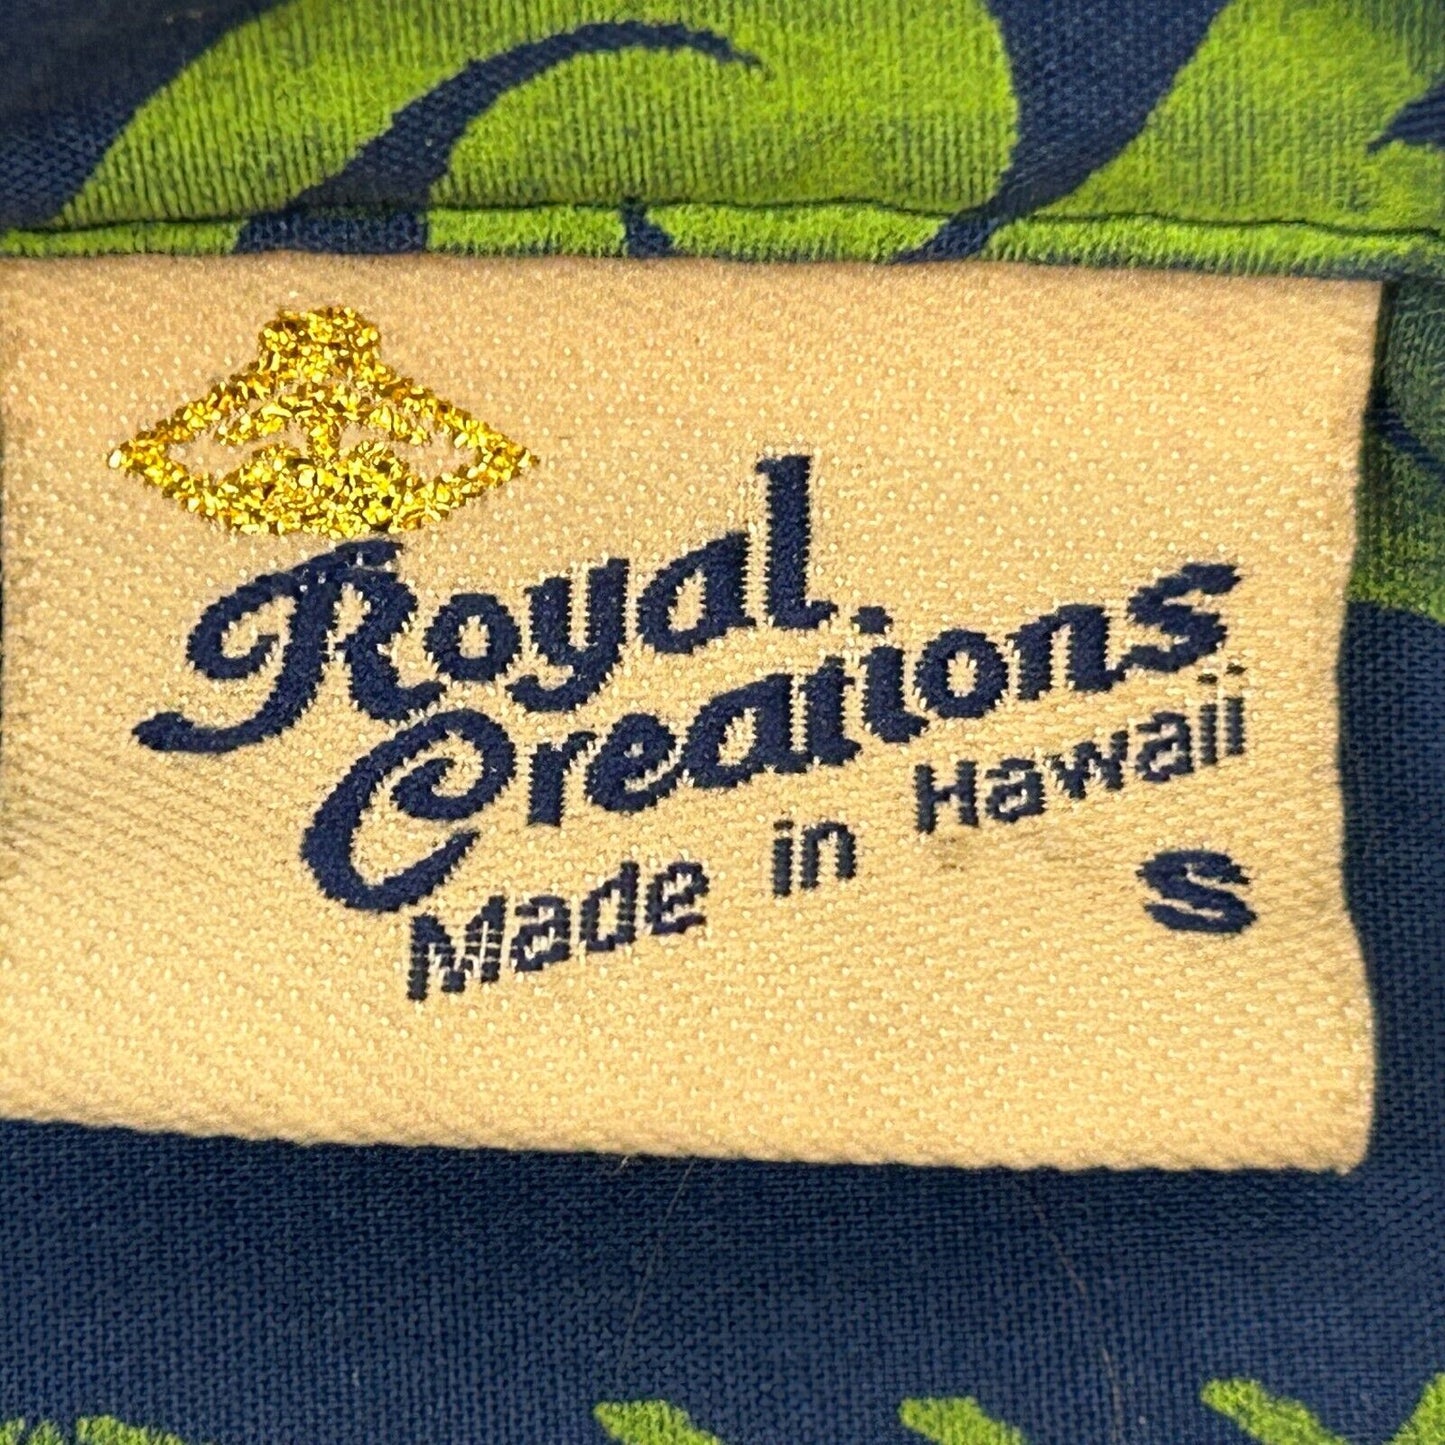 Royal Creations Vintage 90s Hawaiian Camp Shirt Sea Turtles Made In USA Small